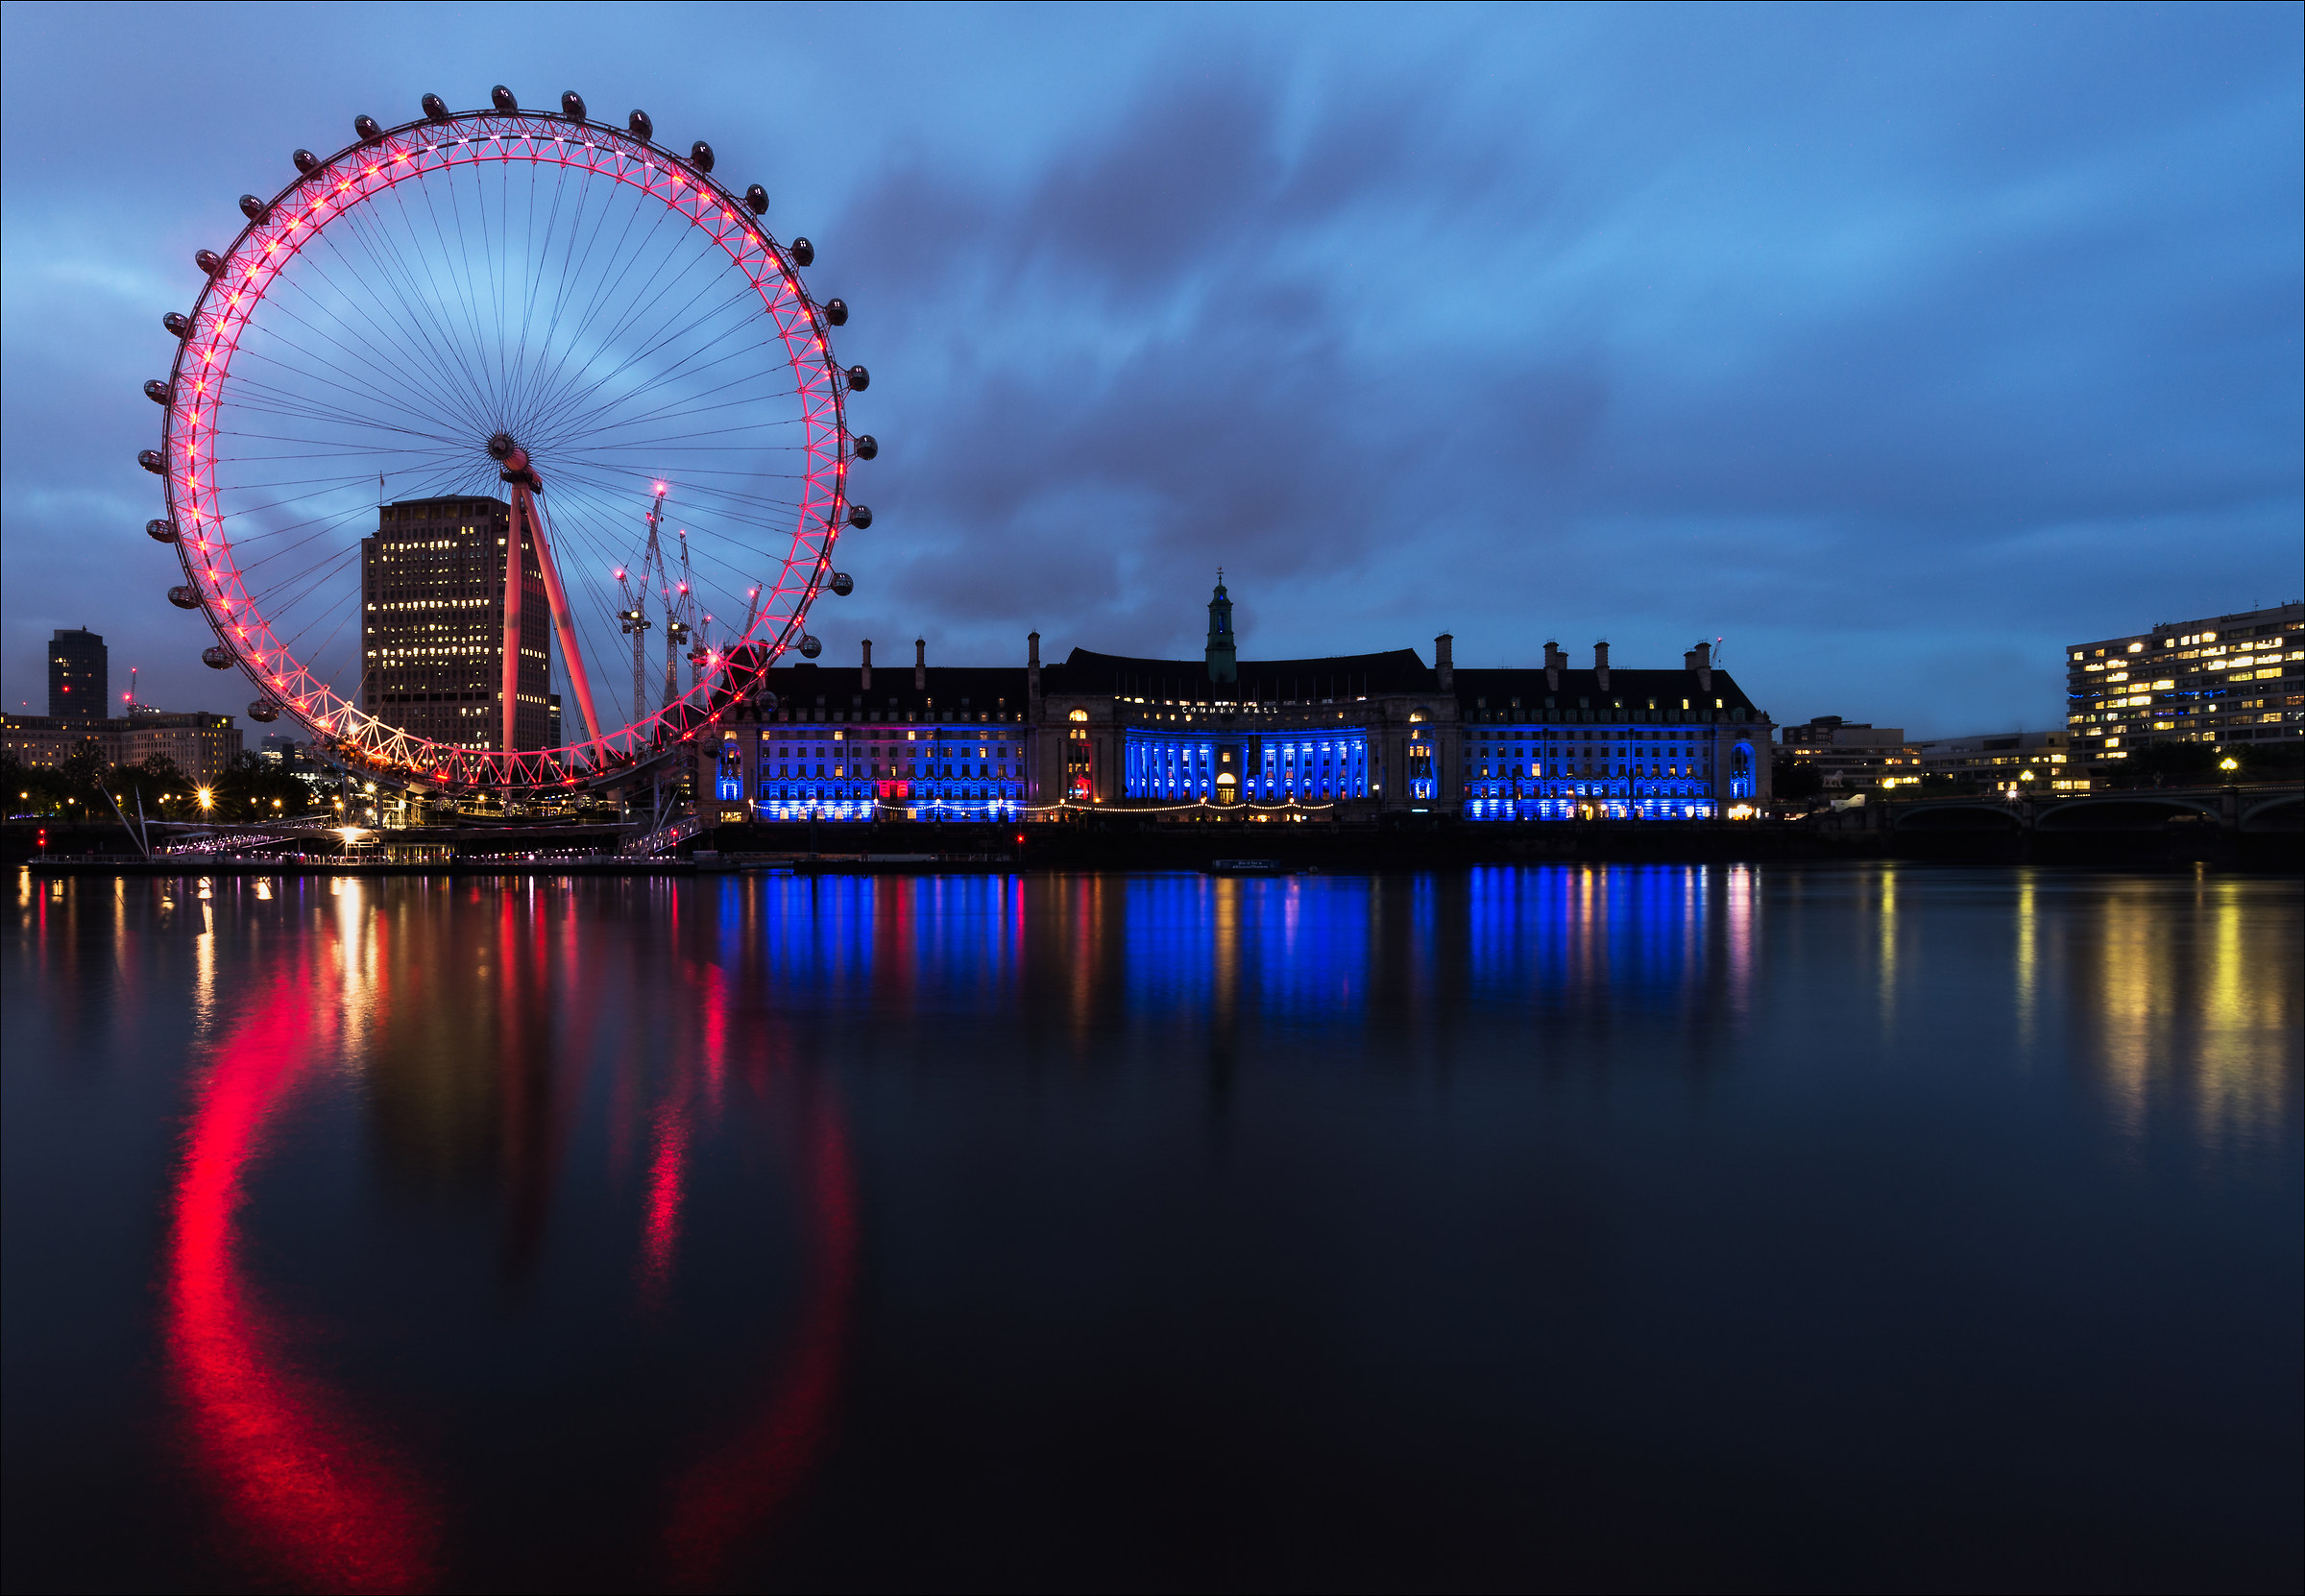 London Eye - Ferris Wheel...